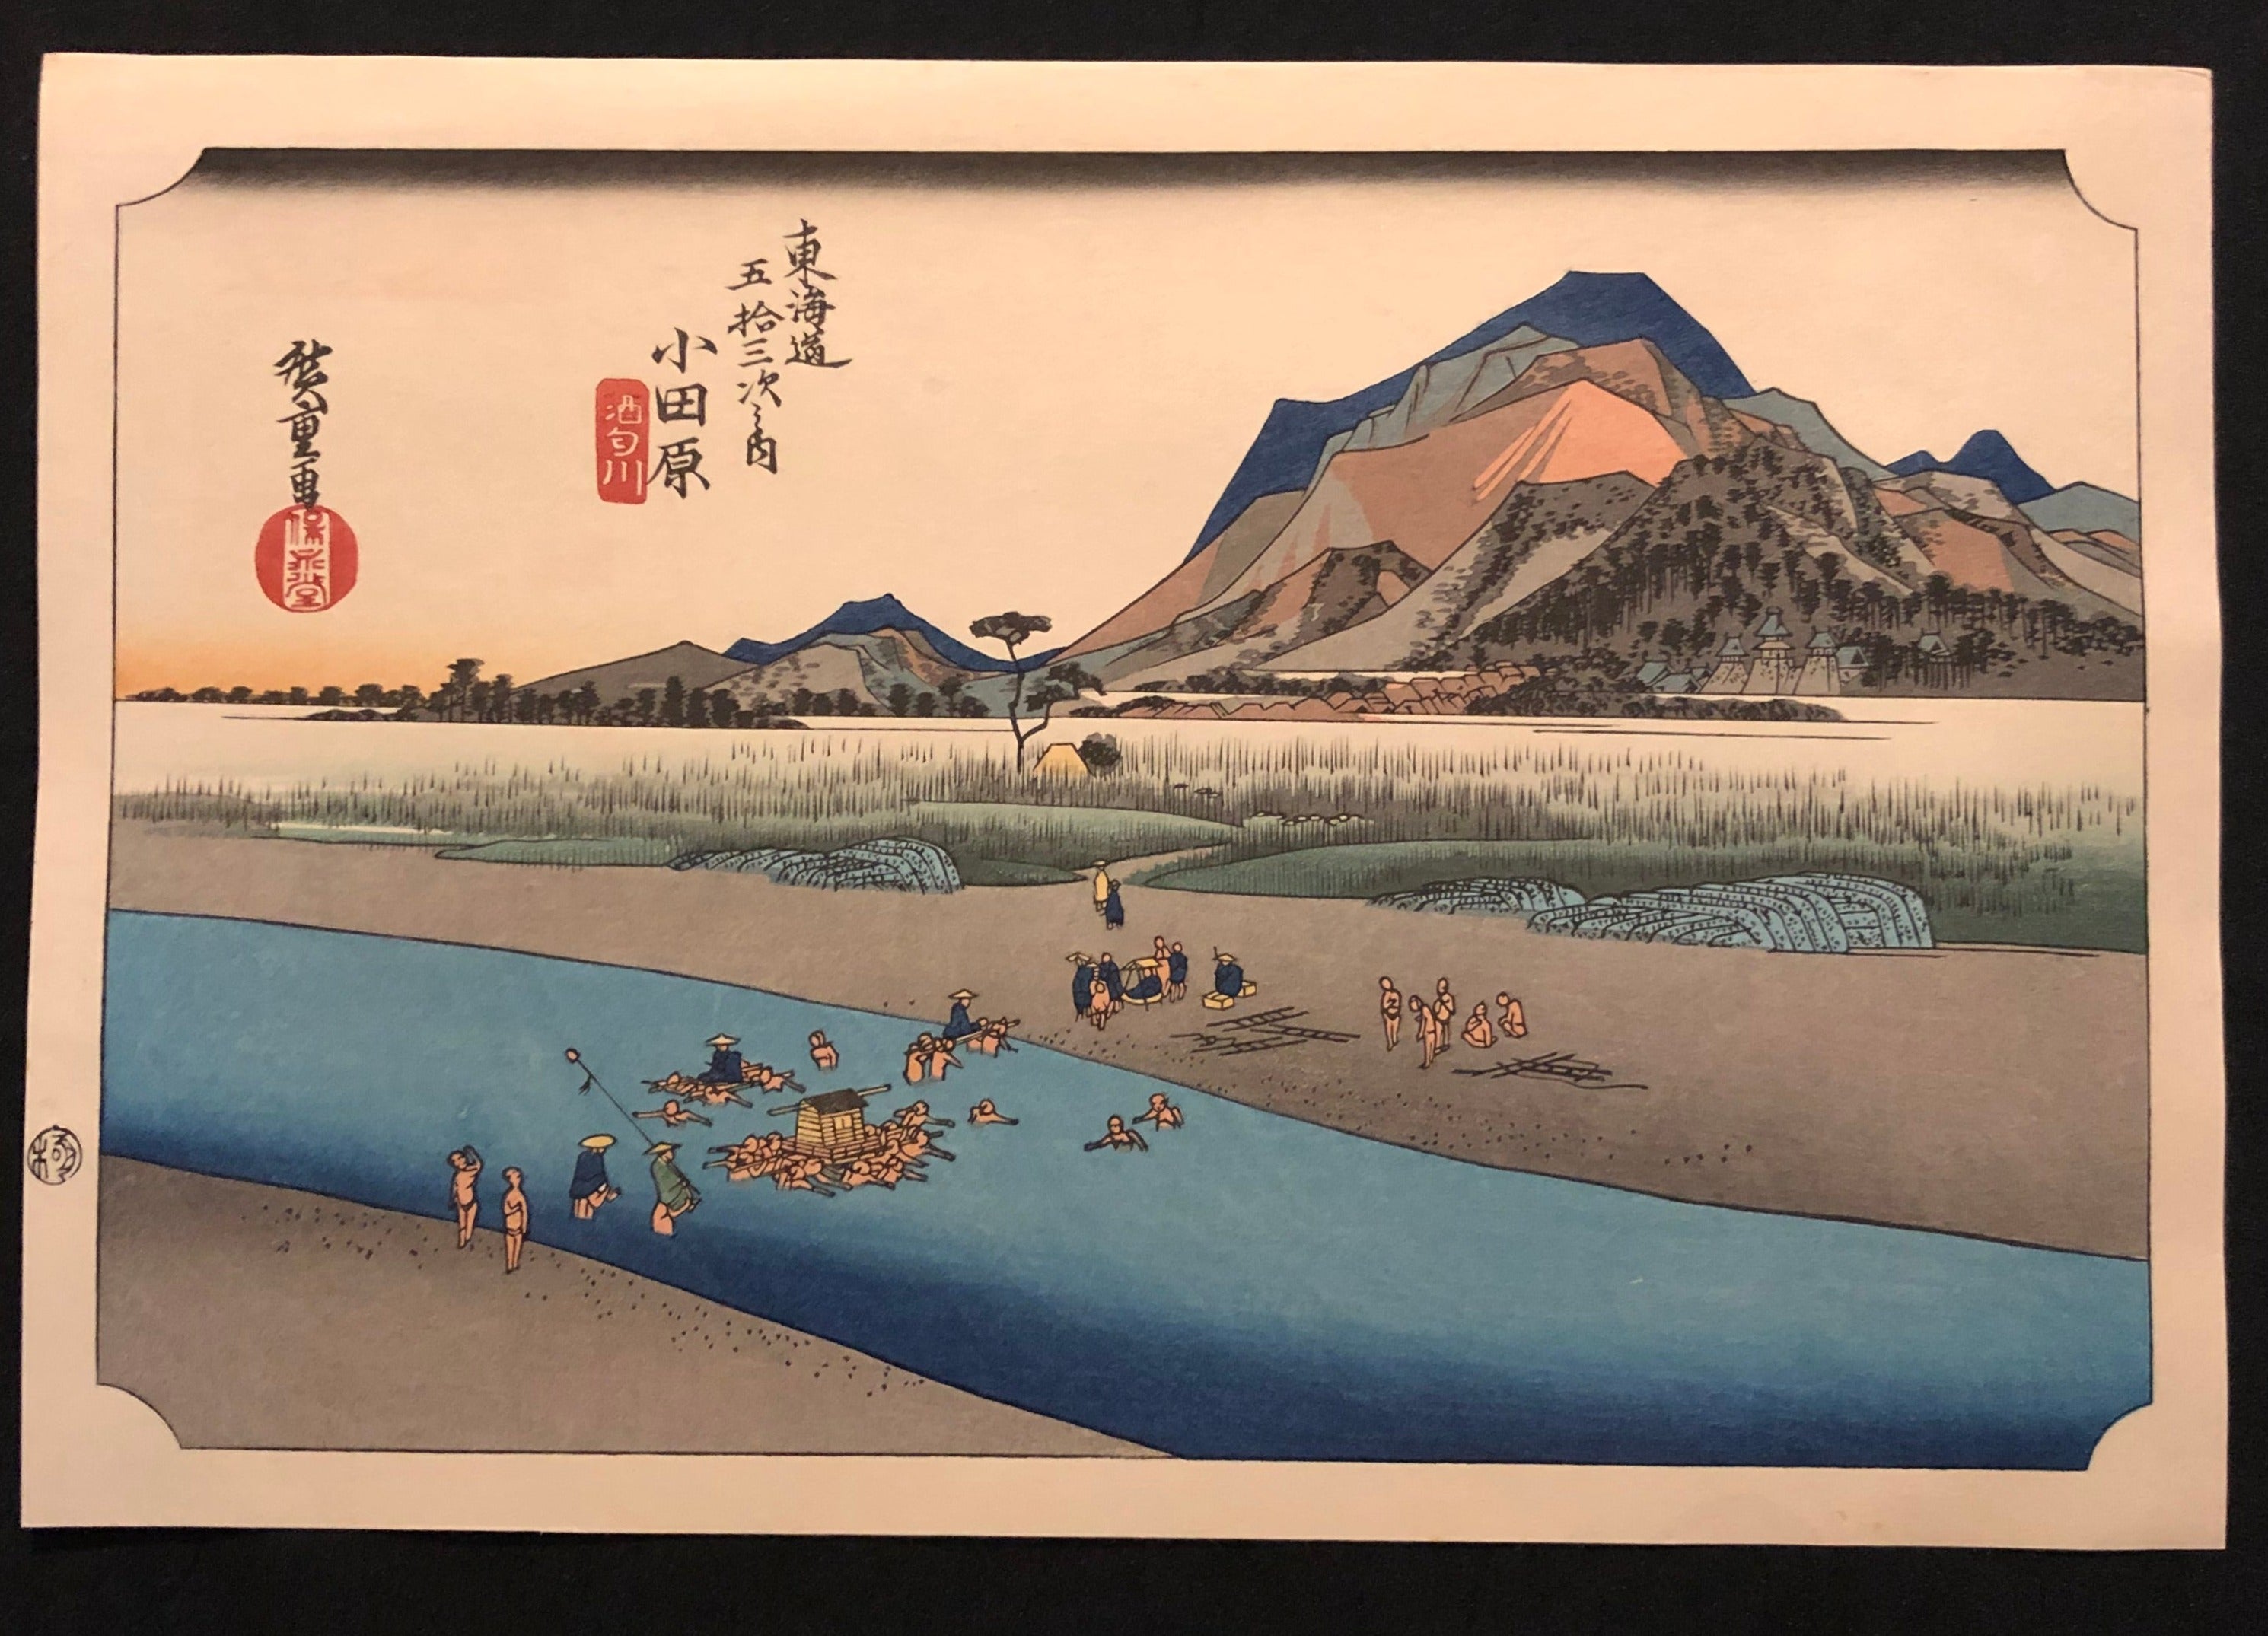 歌川広重 東海道五十三次 復刻版 小田原 木版画 浮世絵 Utagawa 